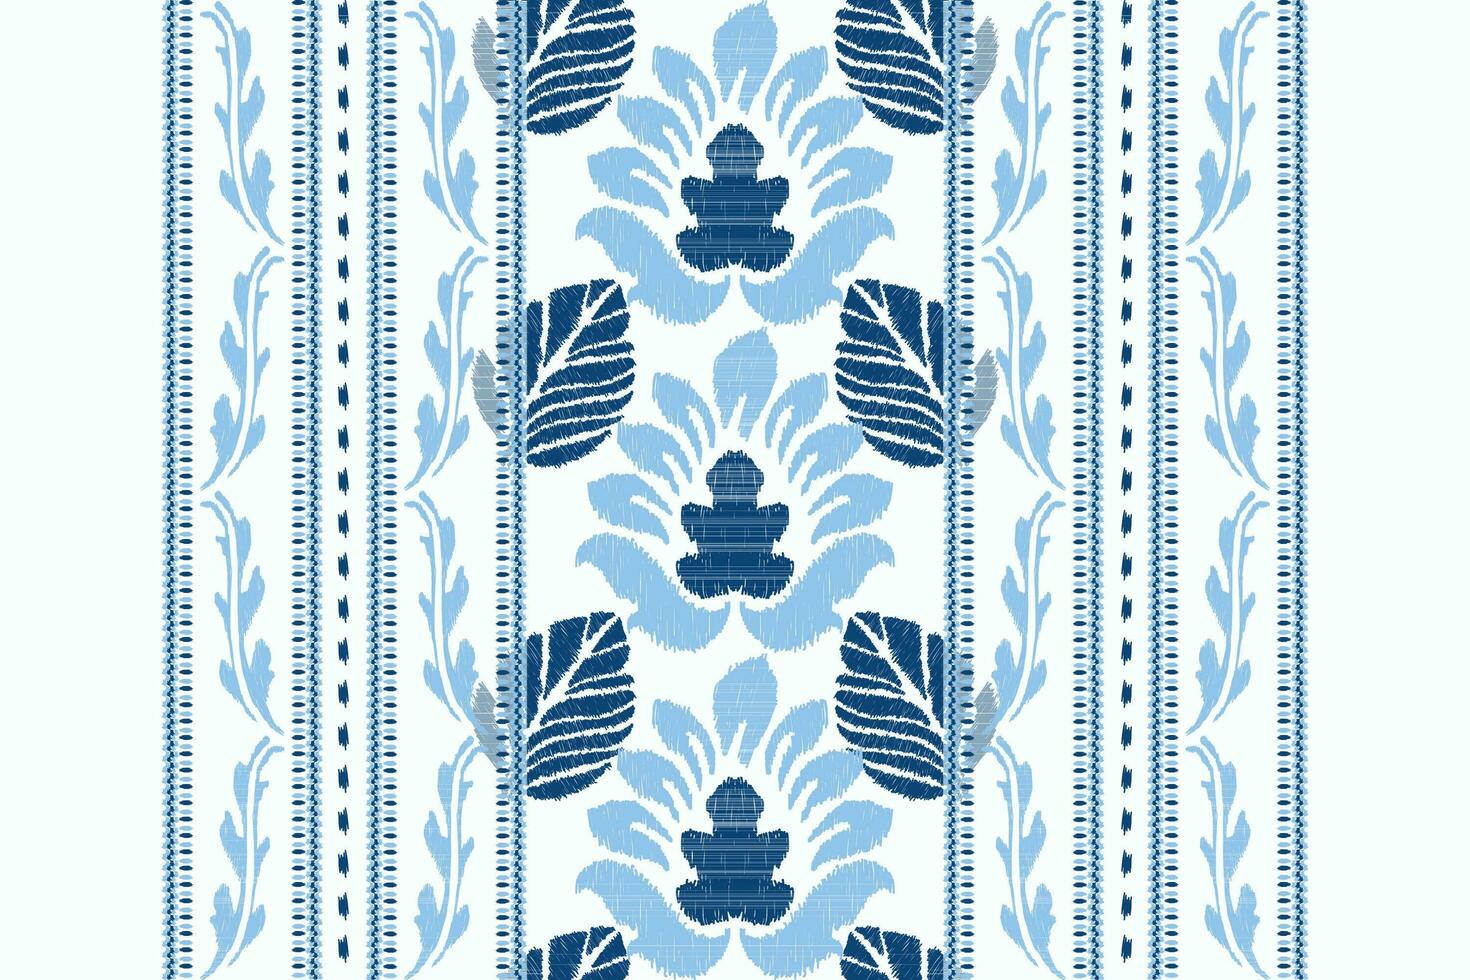 ikat floral cachemir bordado.azul y blanco fondo.ikat étnico oriental modelo tradicional.azteca estilo resumen vector ilustración.diseño para textura,tela,ropa,envoltura,decoración,bufanda.